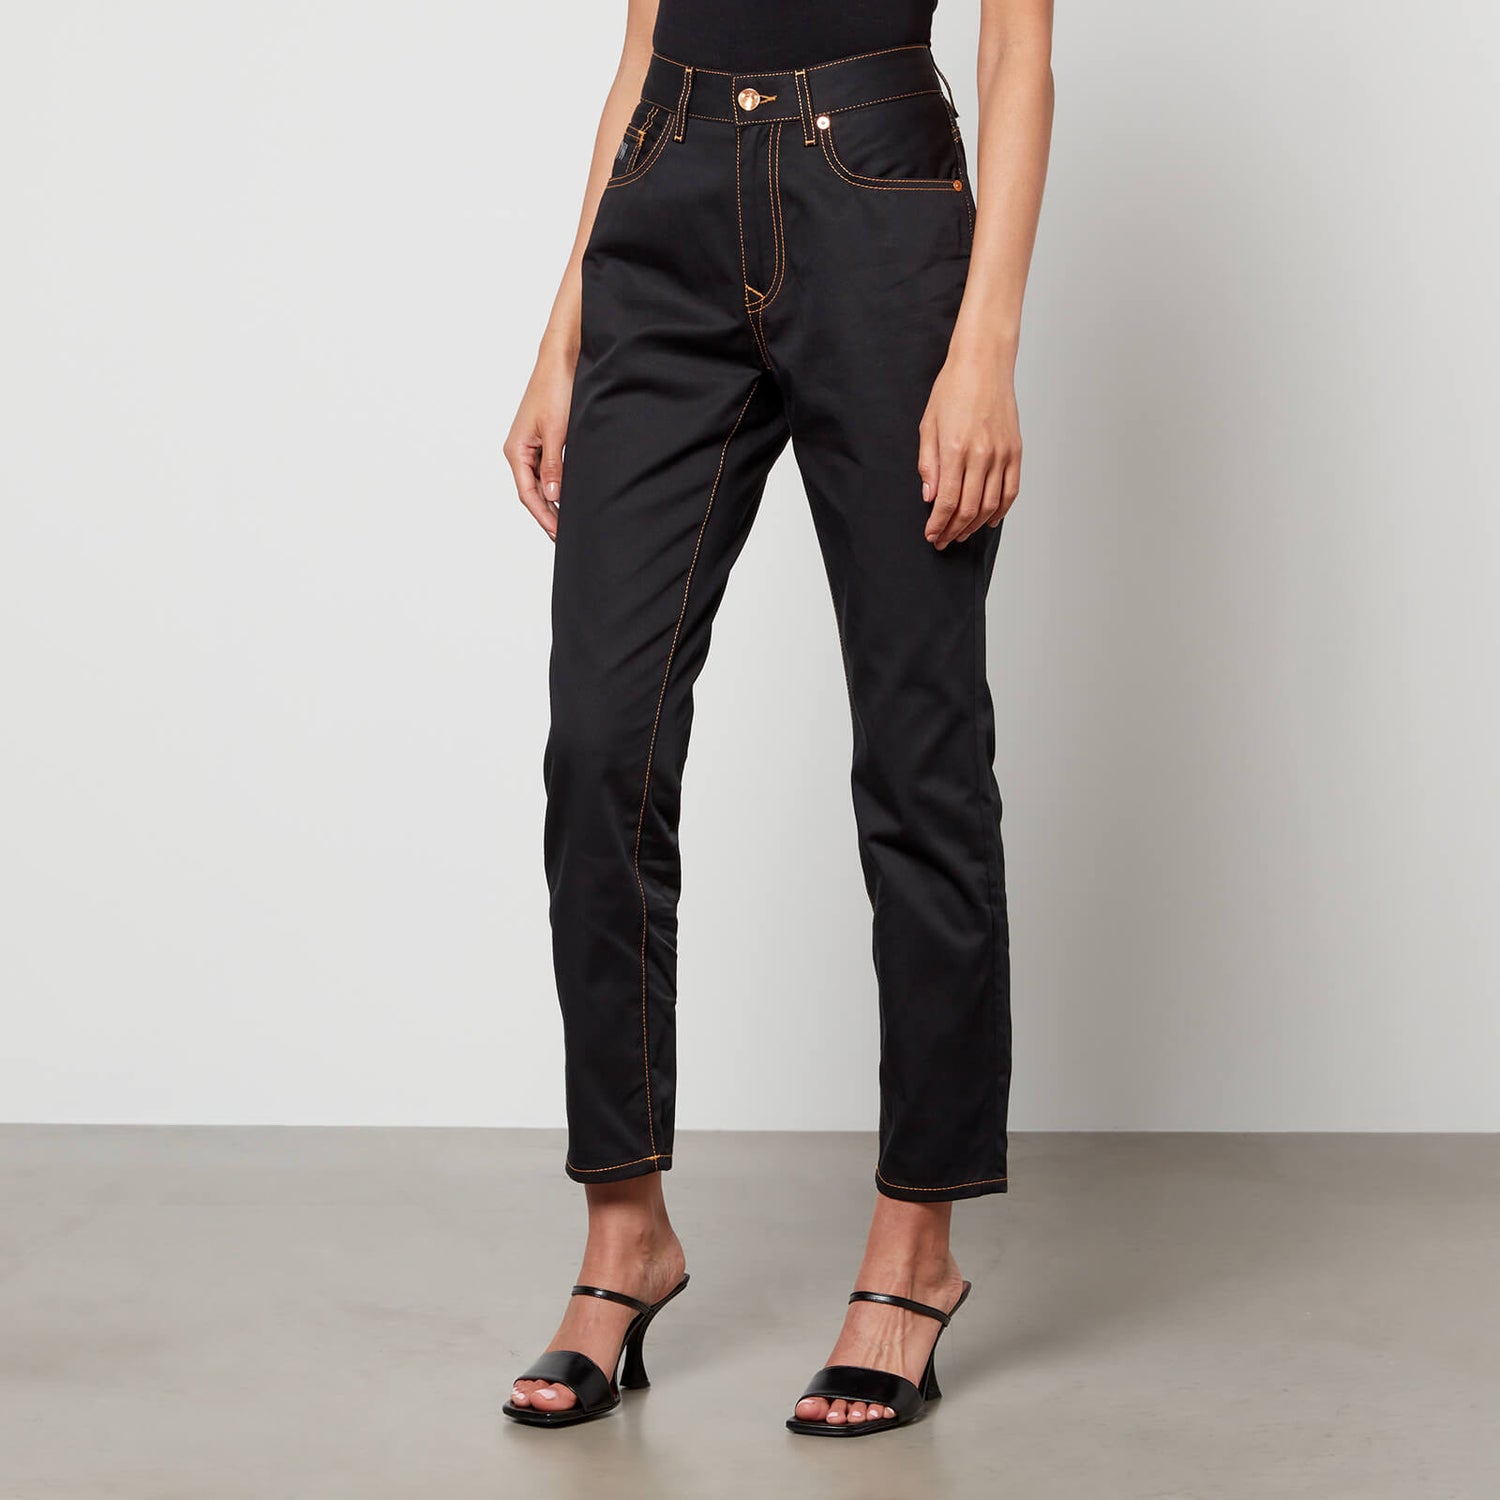 Vivienne Westwood Women's Harris Jeans - Black - W27